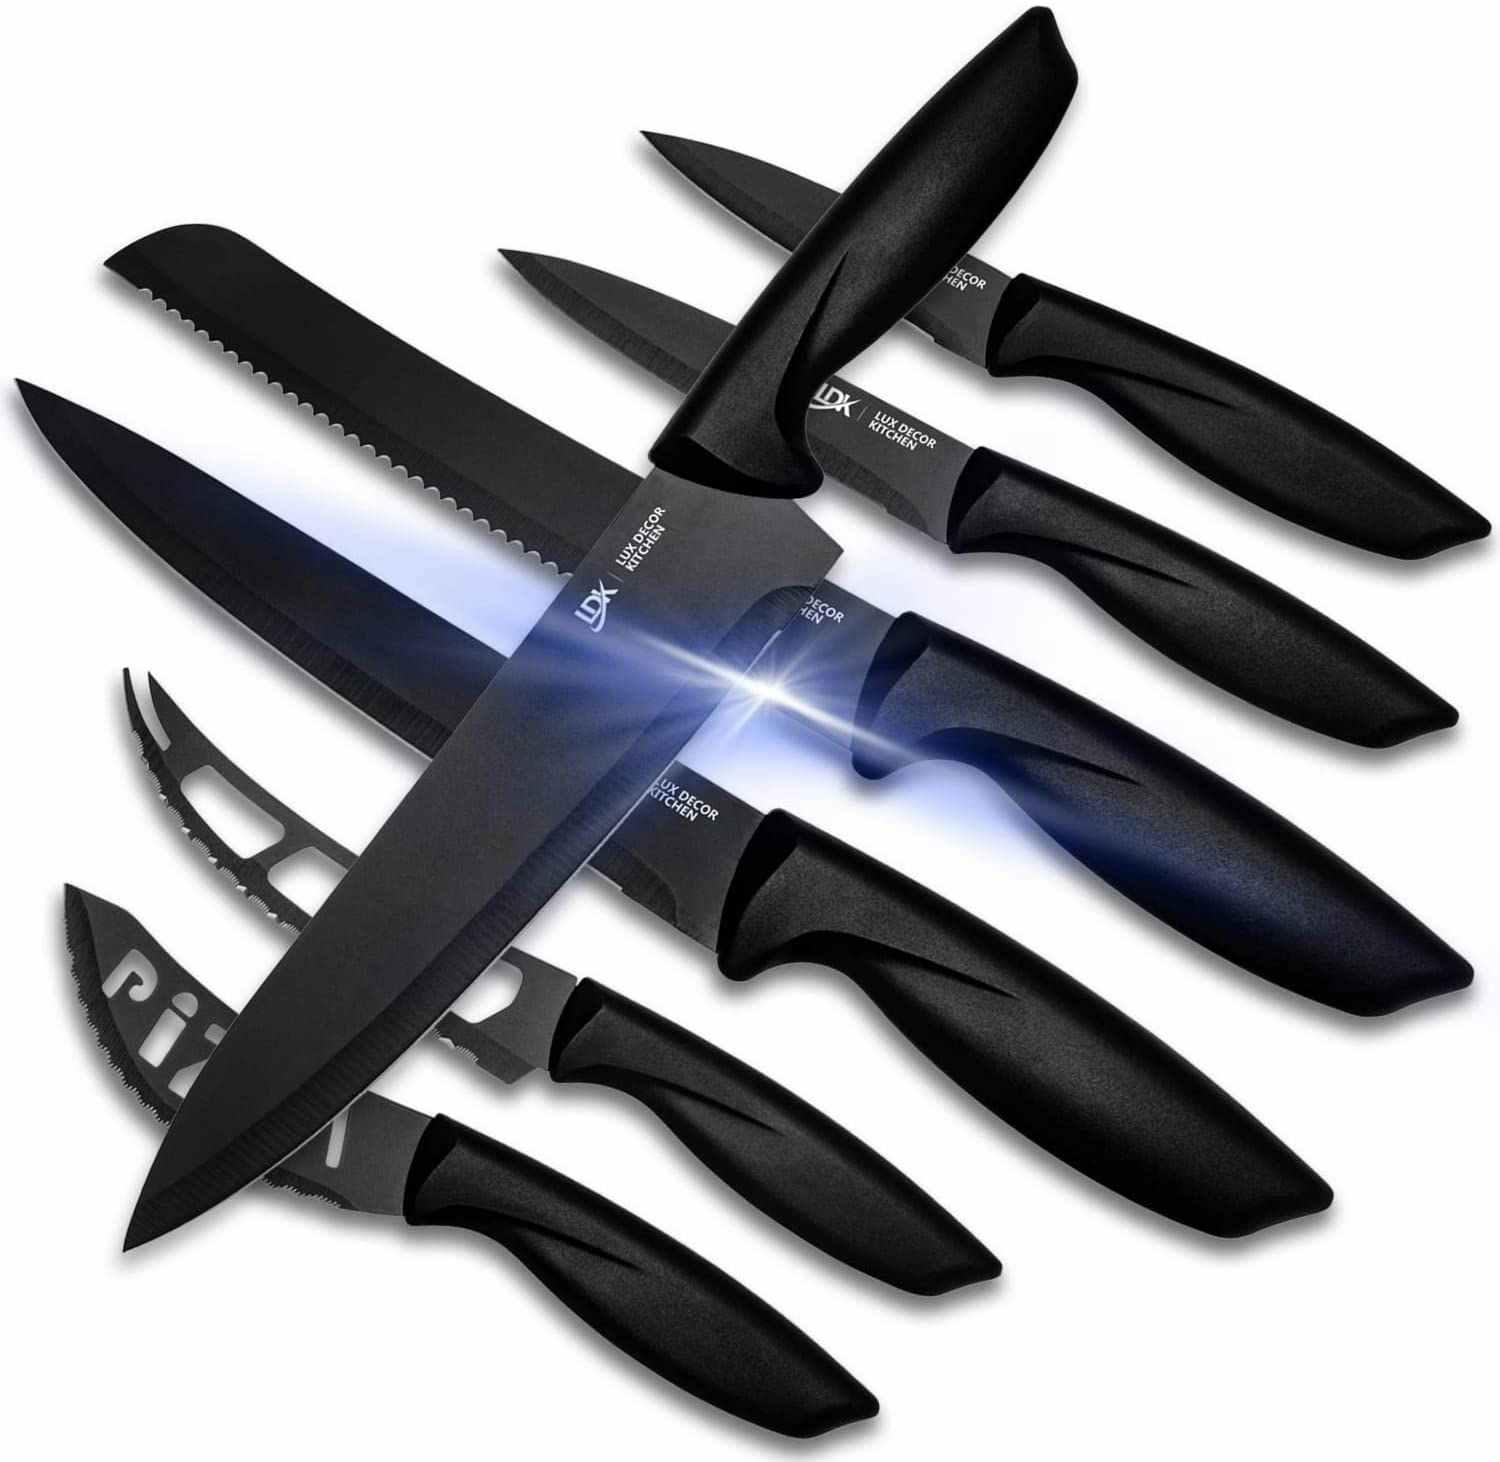 A set of seven black kitchen knives.